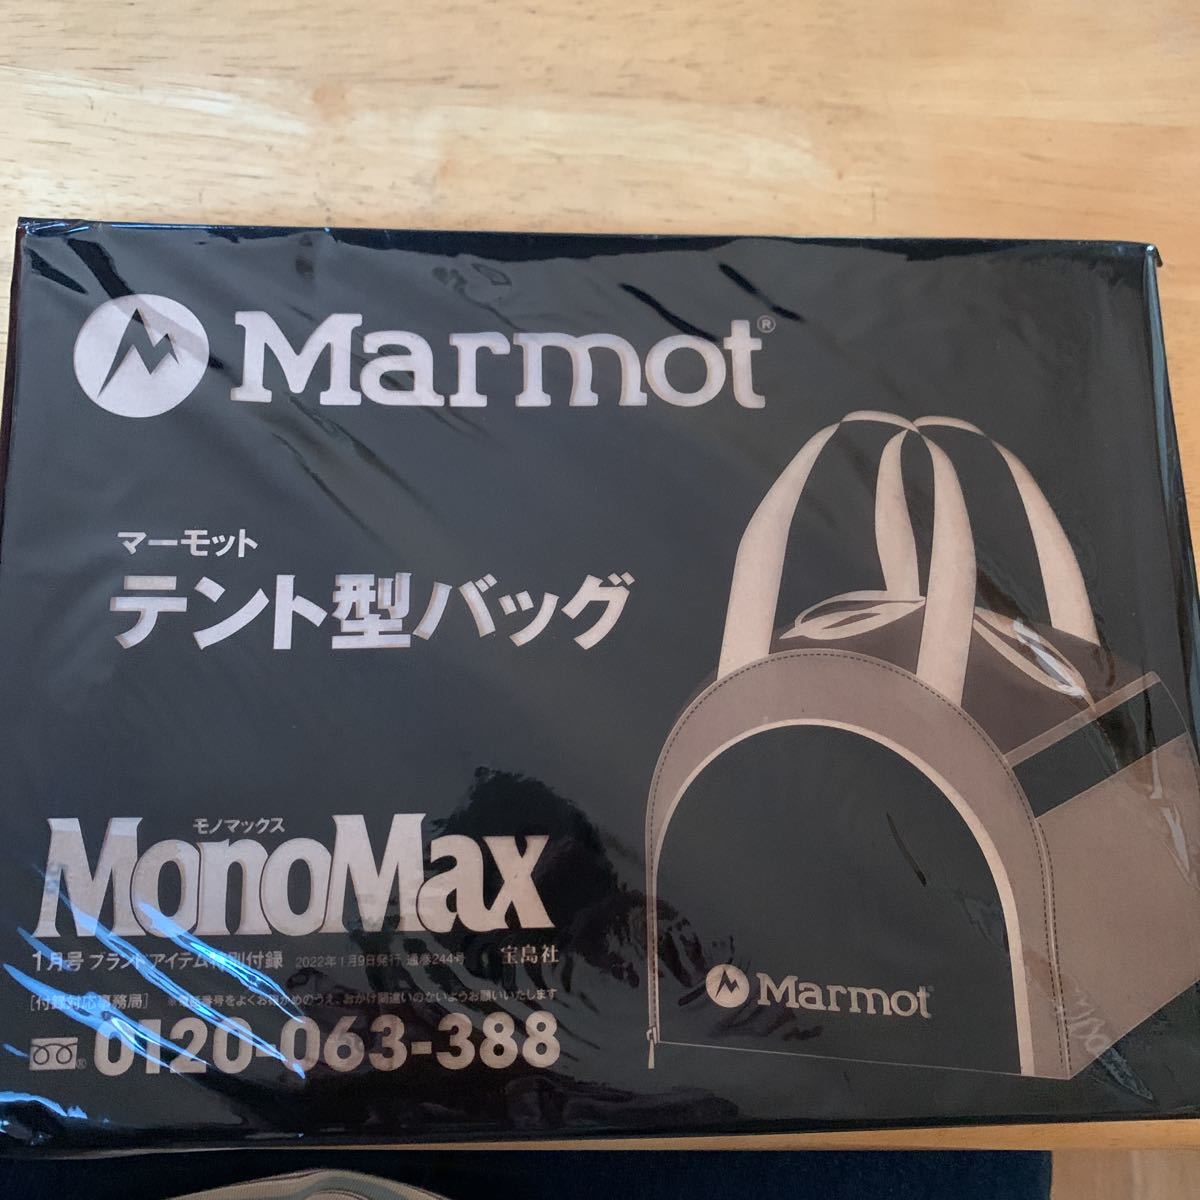 MonoMax（モノマックス）2022年1月号付録 マーモット ガバッと開くテント型バッグ_画像1